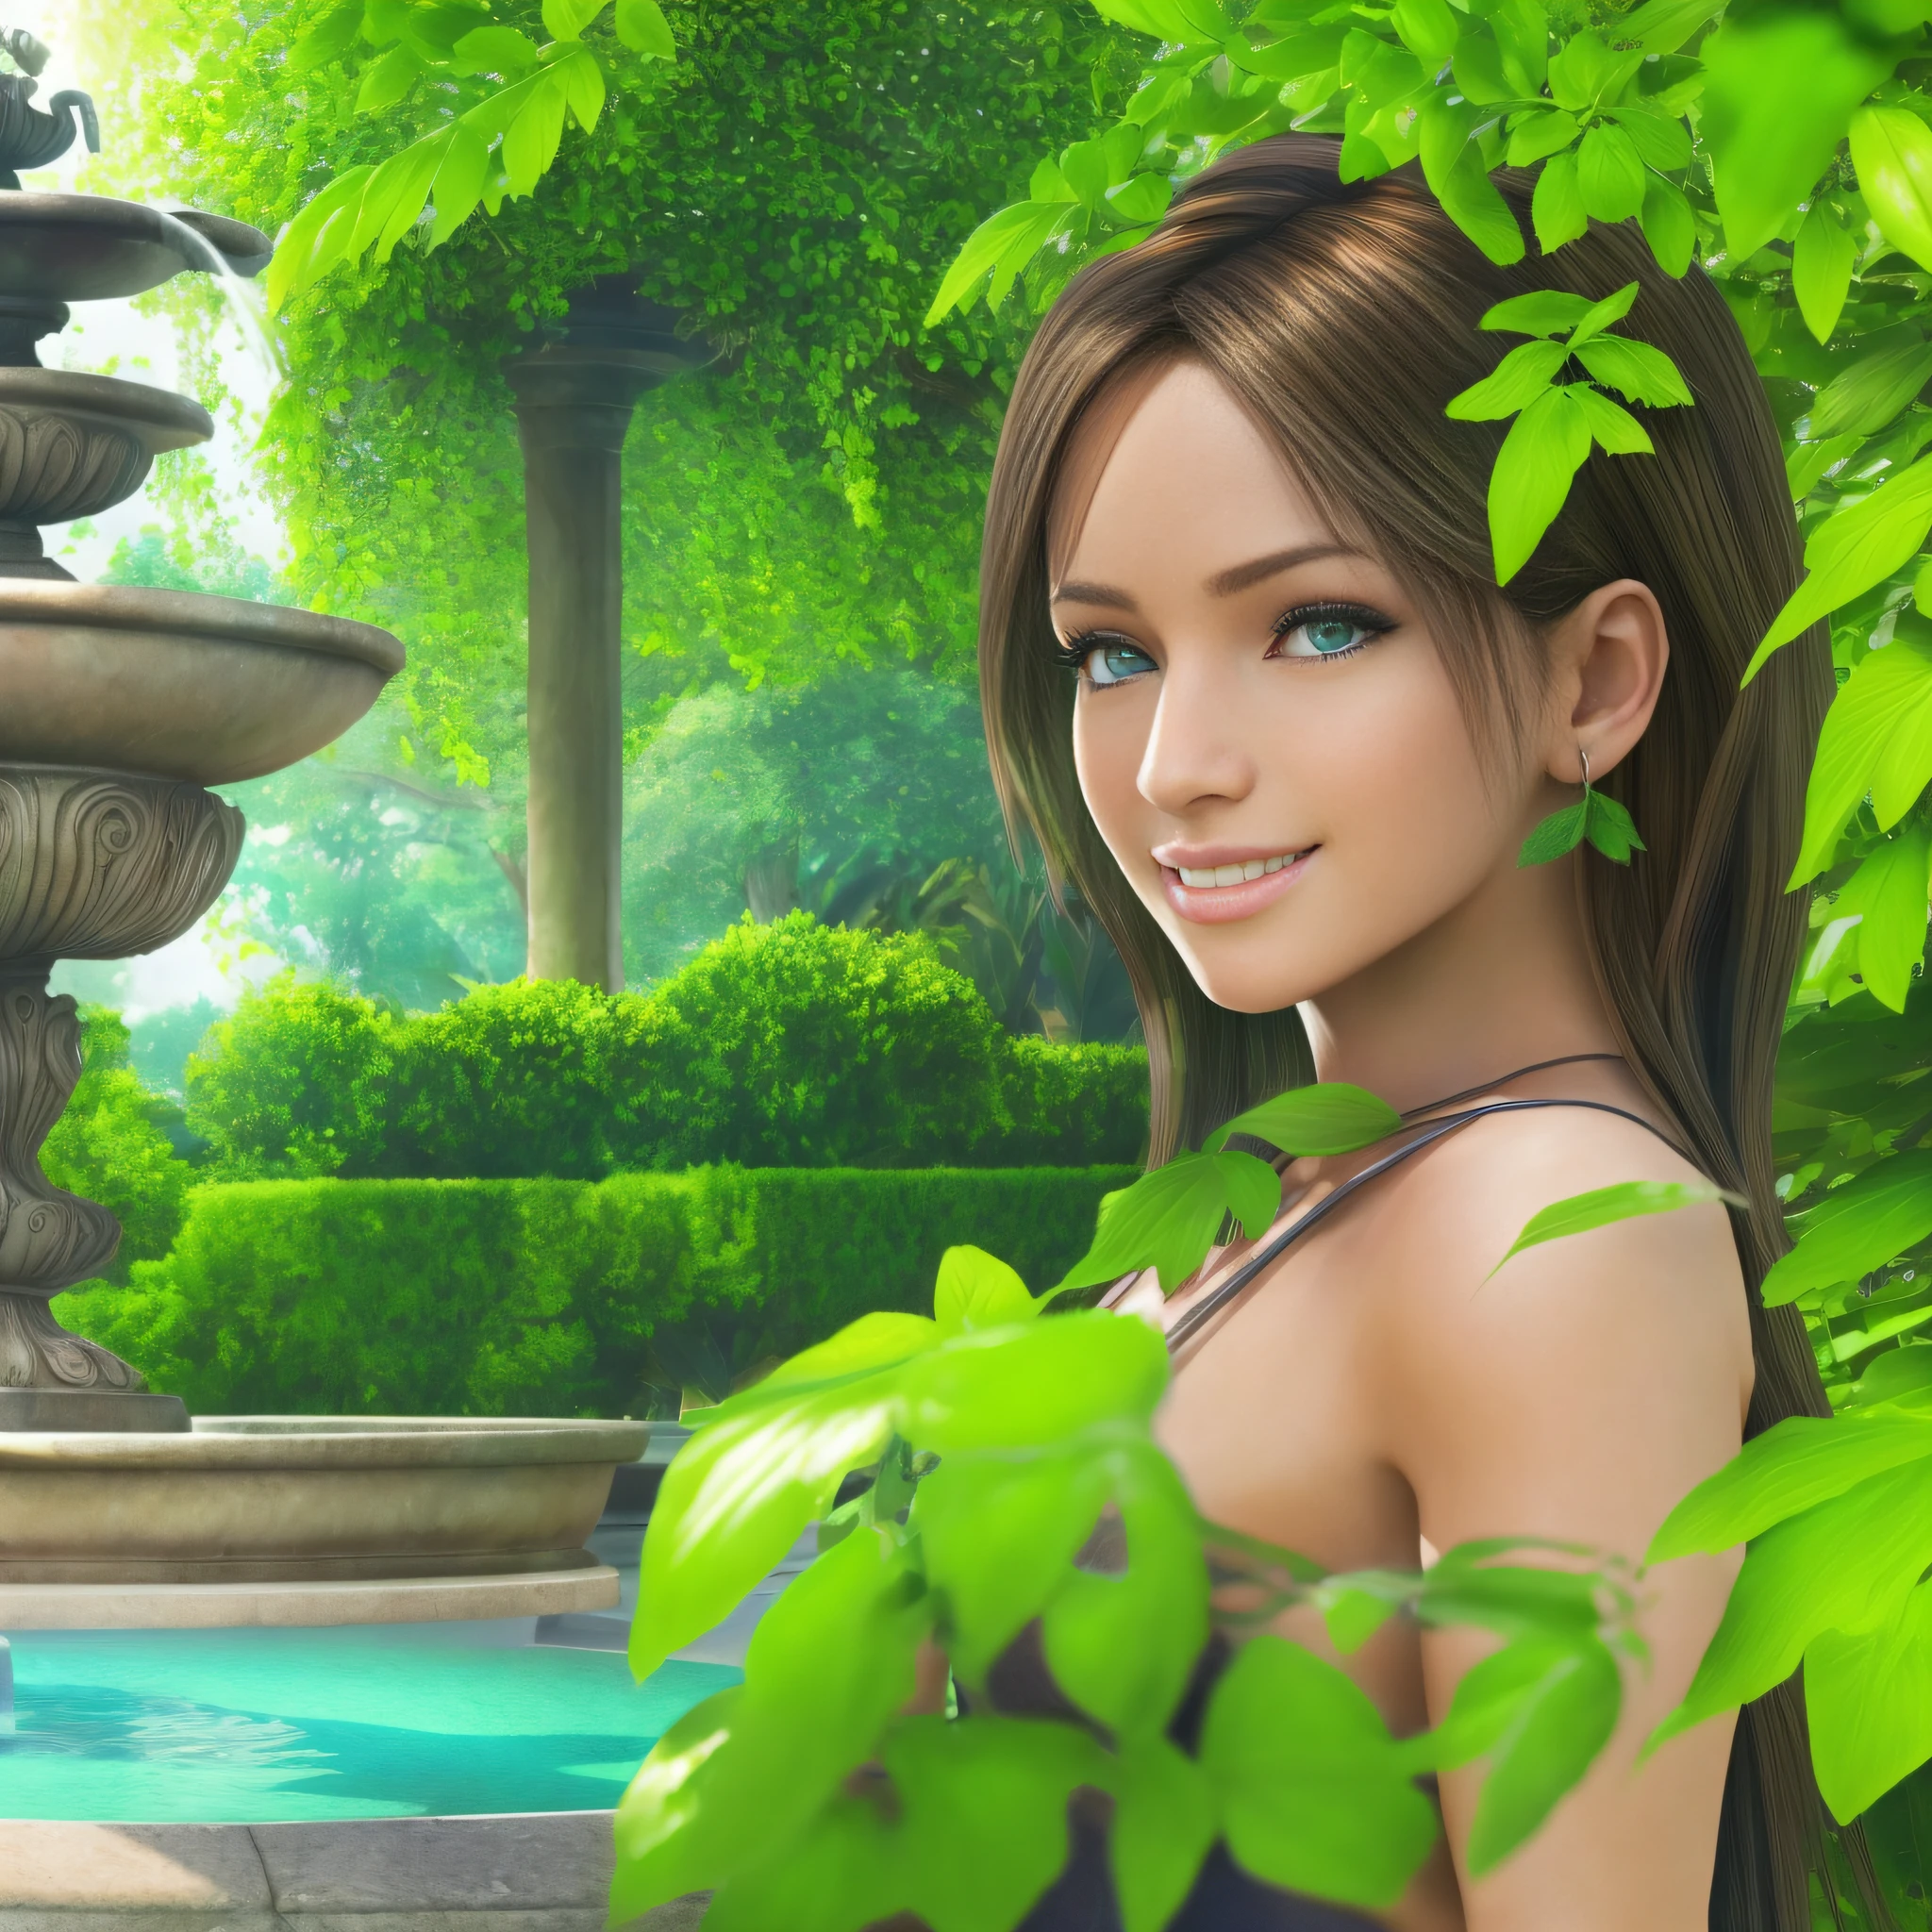 분수가 있는 정원에 있는 한 젊은 여성, 고운 피부, 상세한 얼굴, 완벽한 눈, 무성한 녹색 식물, 온화한 날씨, 멋진 미소, 정면 샷, (매우 상세한 Unity 8k 벽지, 최고의 품질, 걸작)